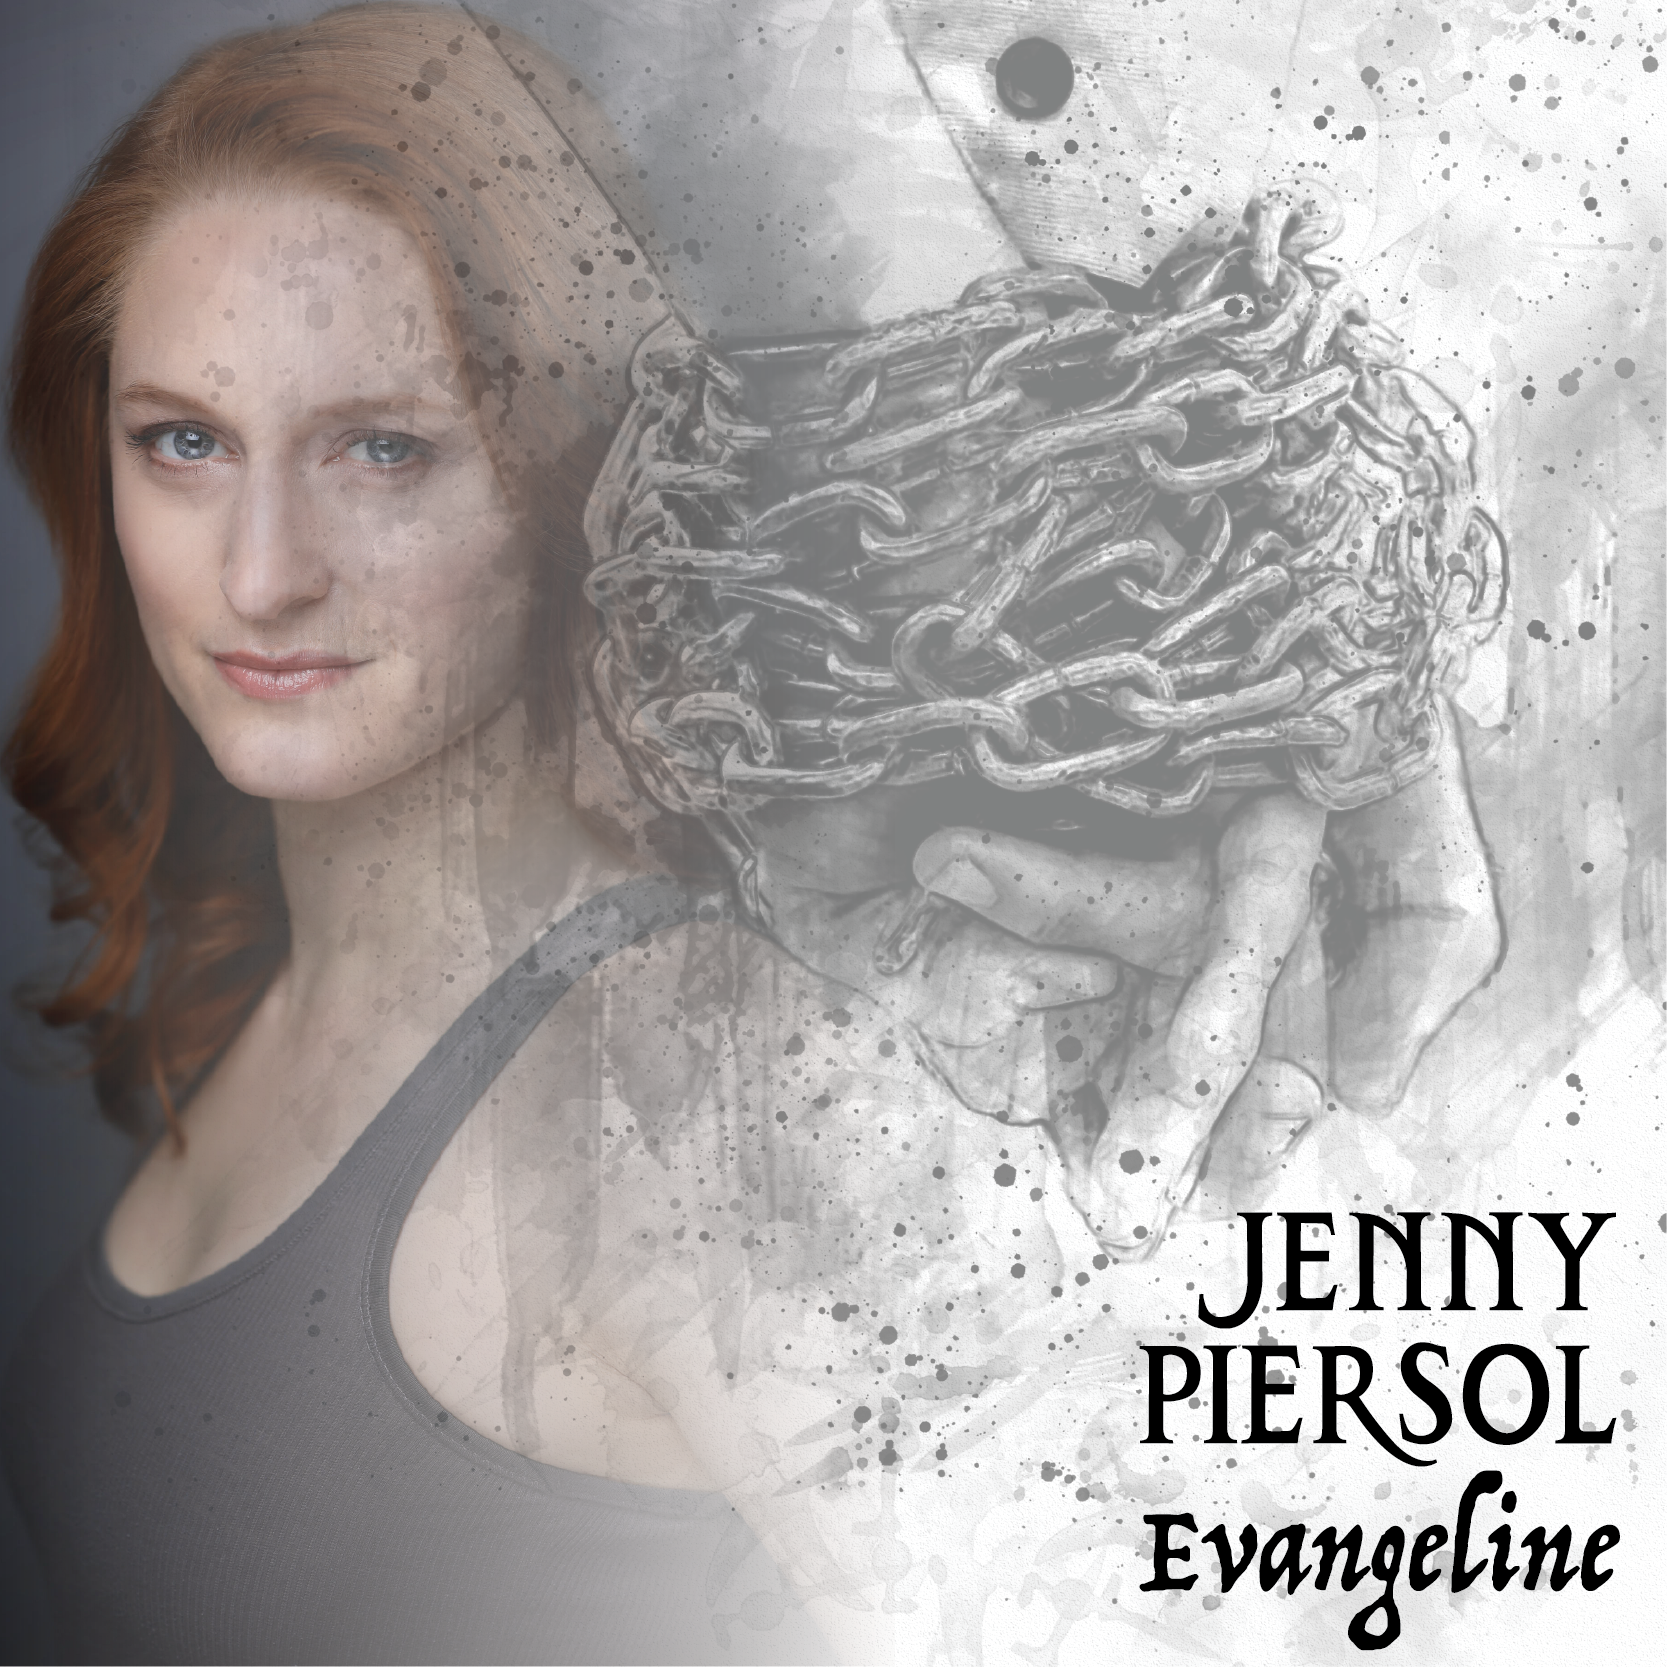 Jenny Piersol is Evangeline